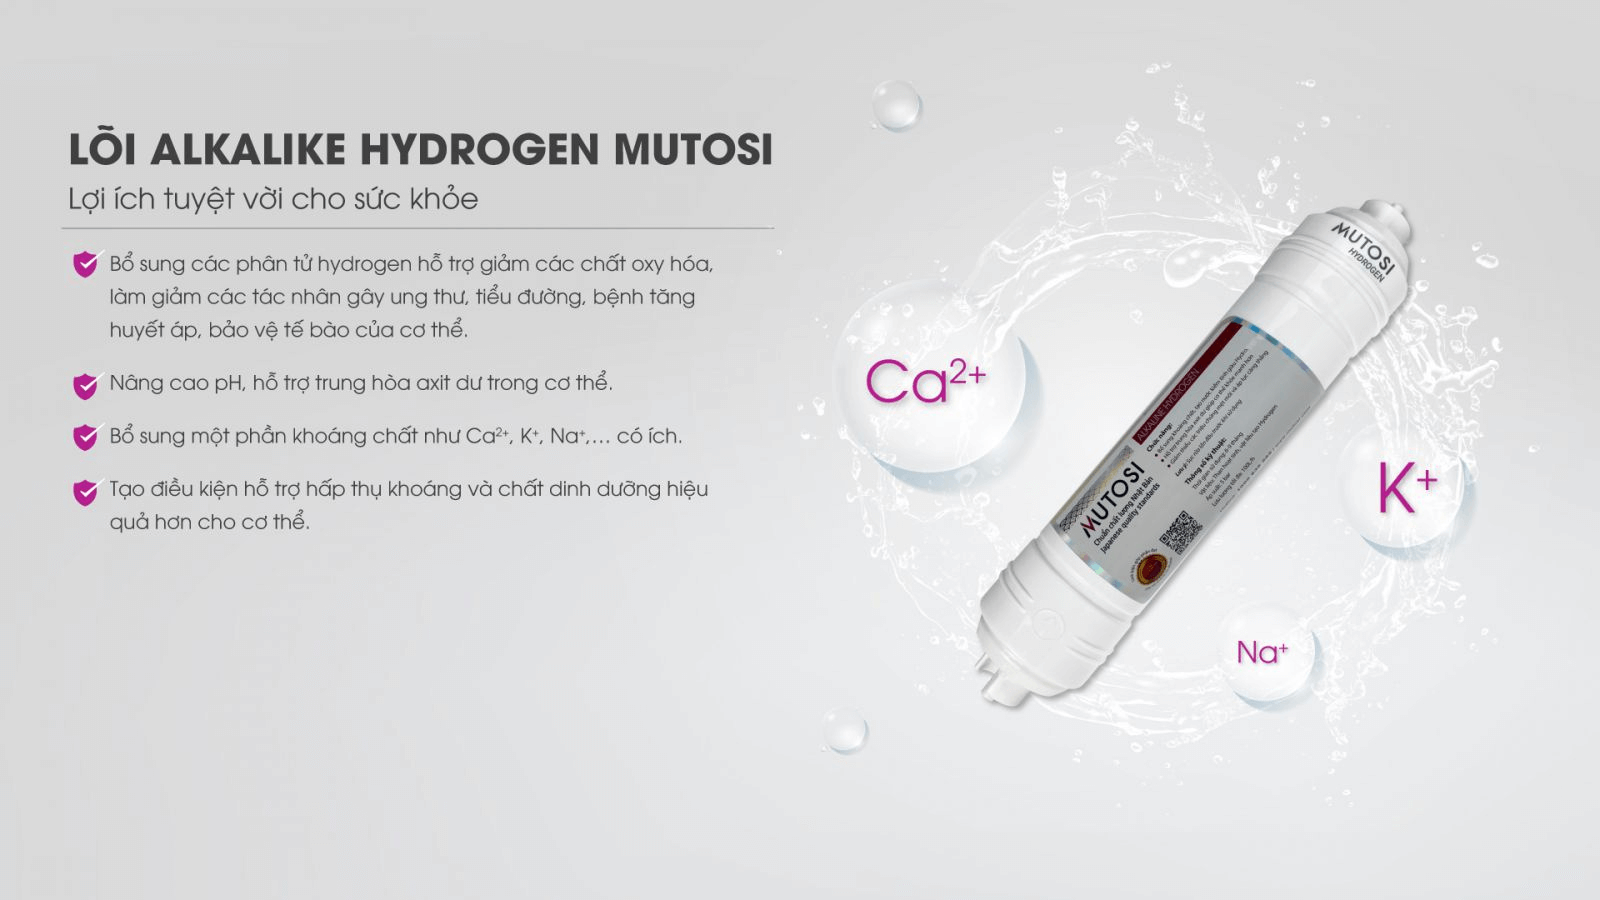 Tính năng của lõi lọc hydrogen Mutosi